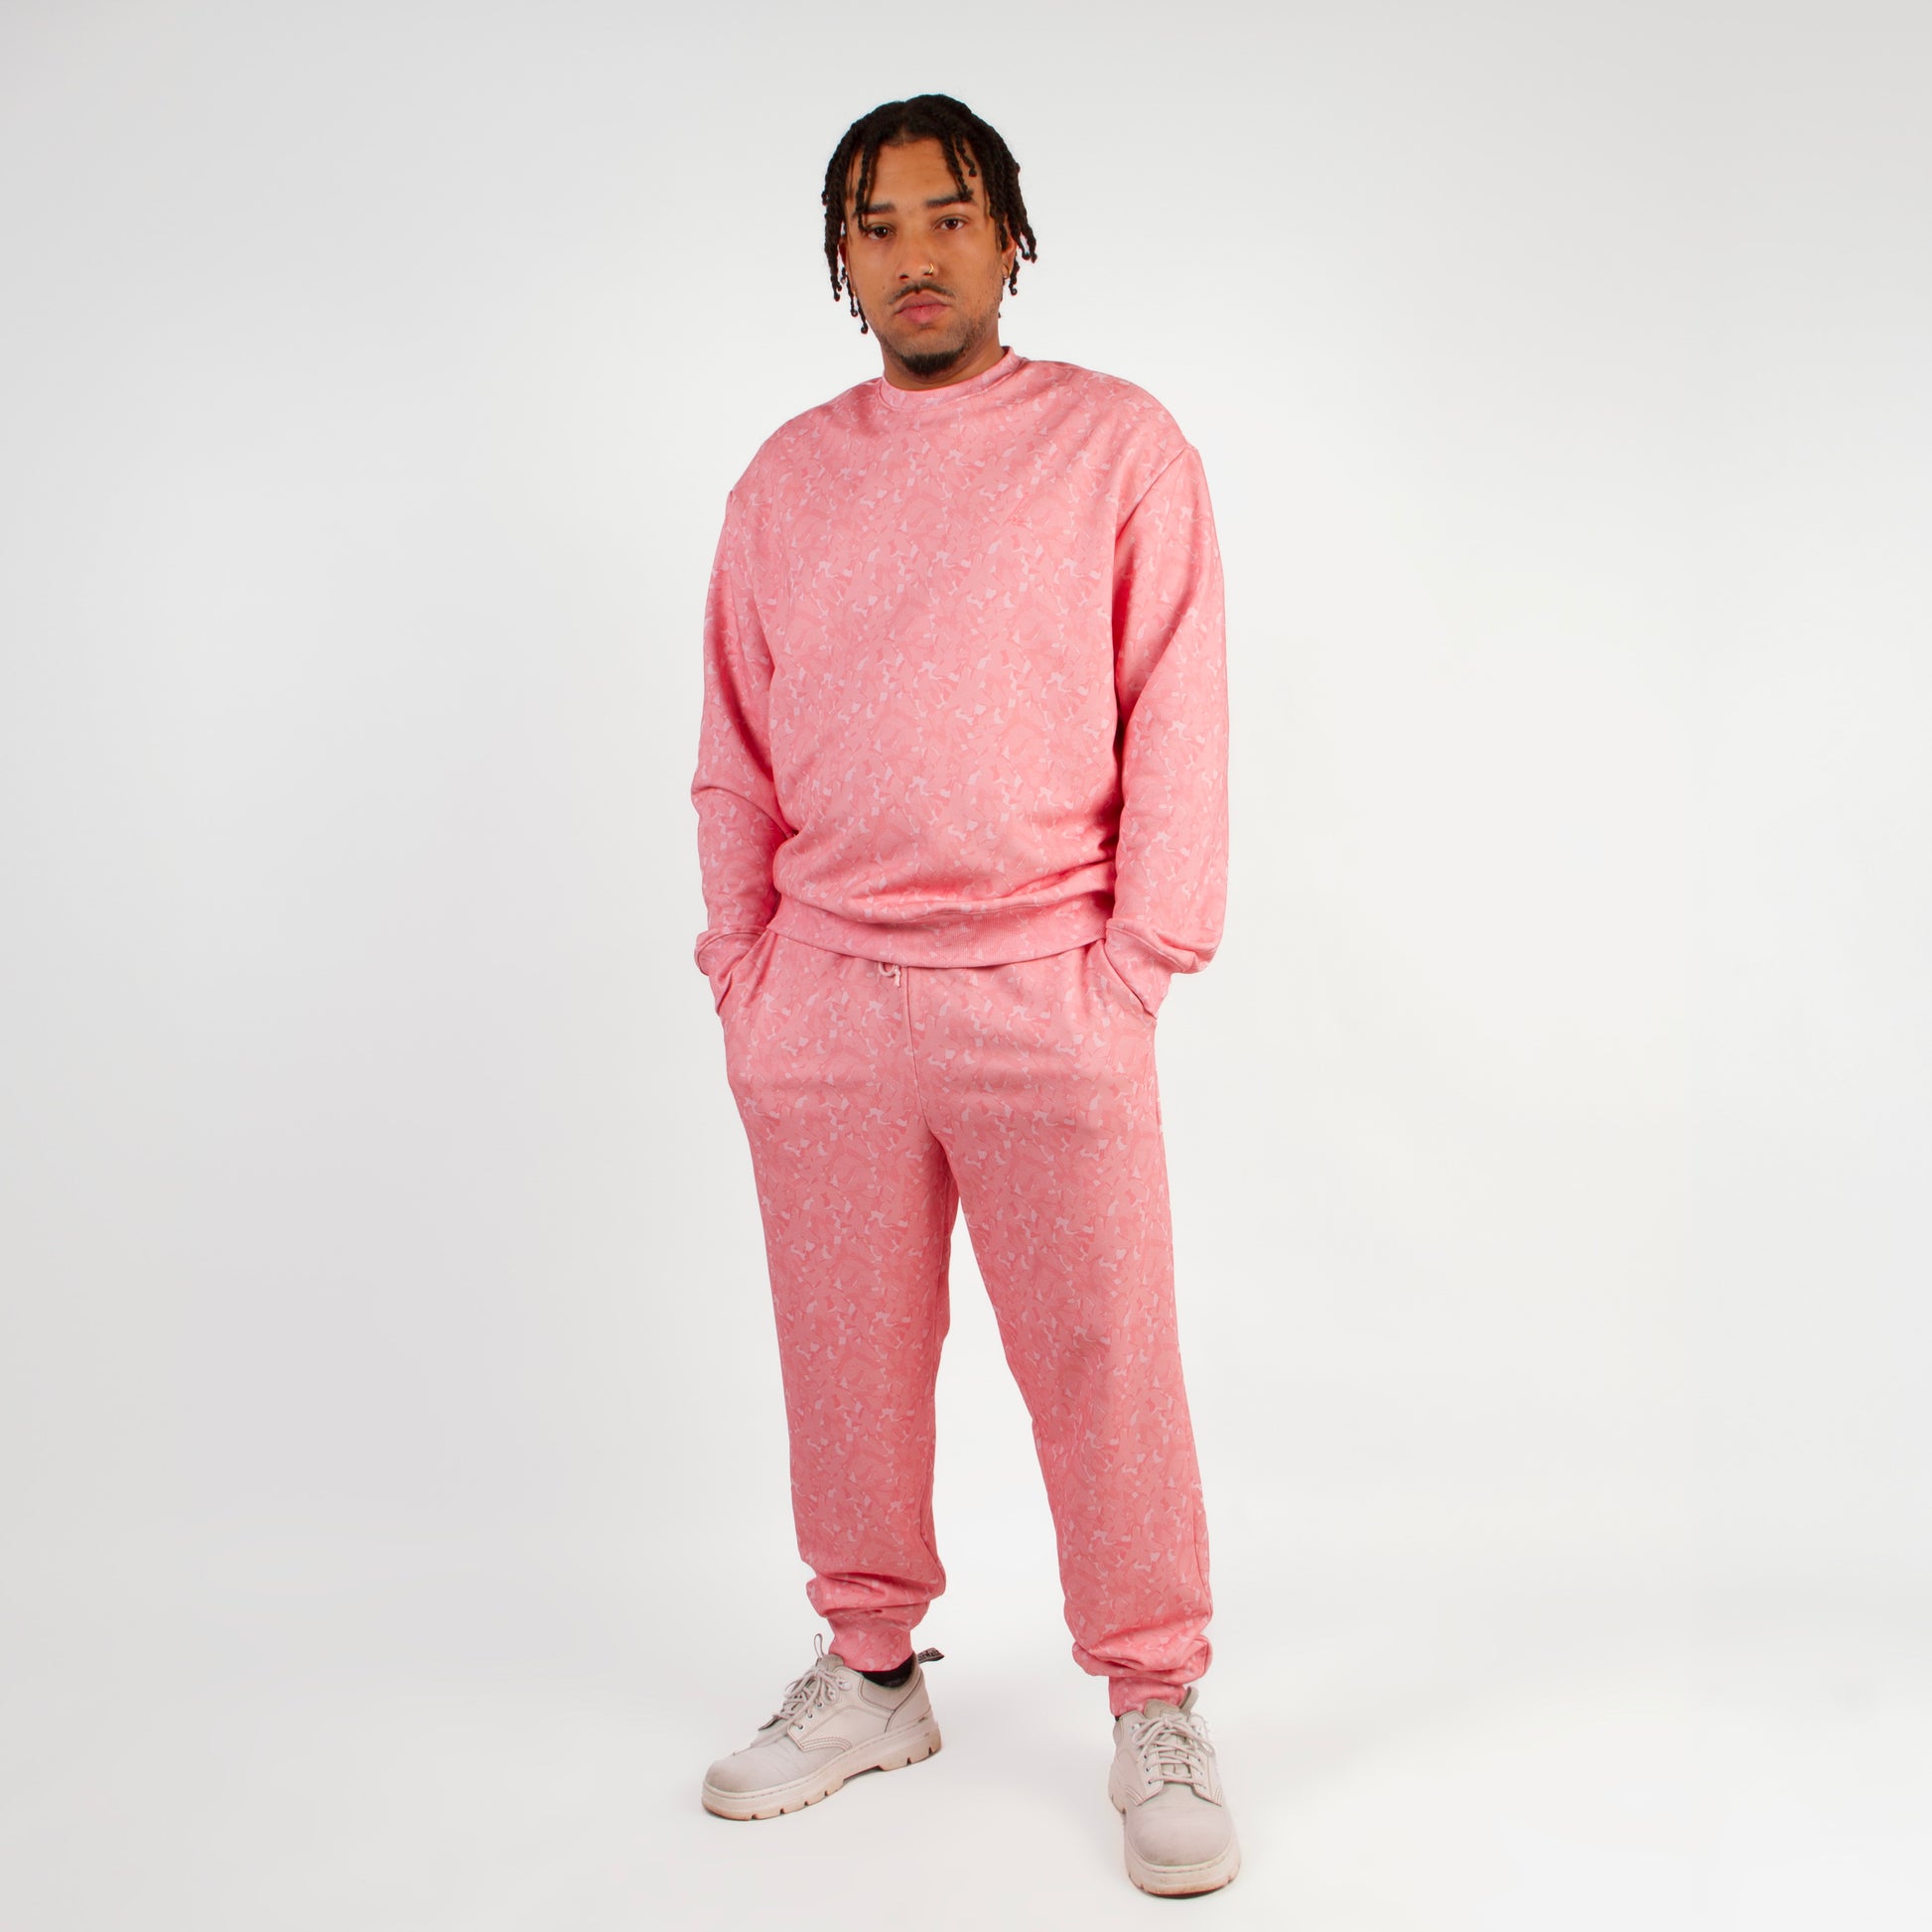 lucewear: homme portant un ensemble de survêtement rose